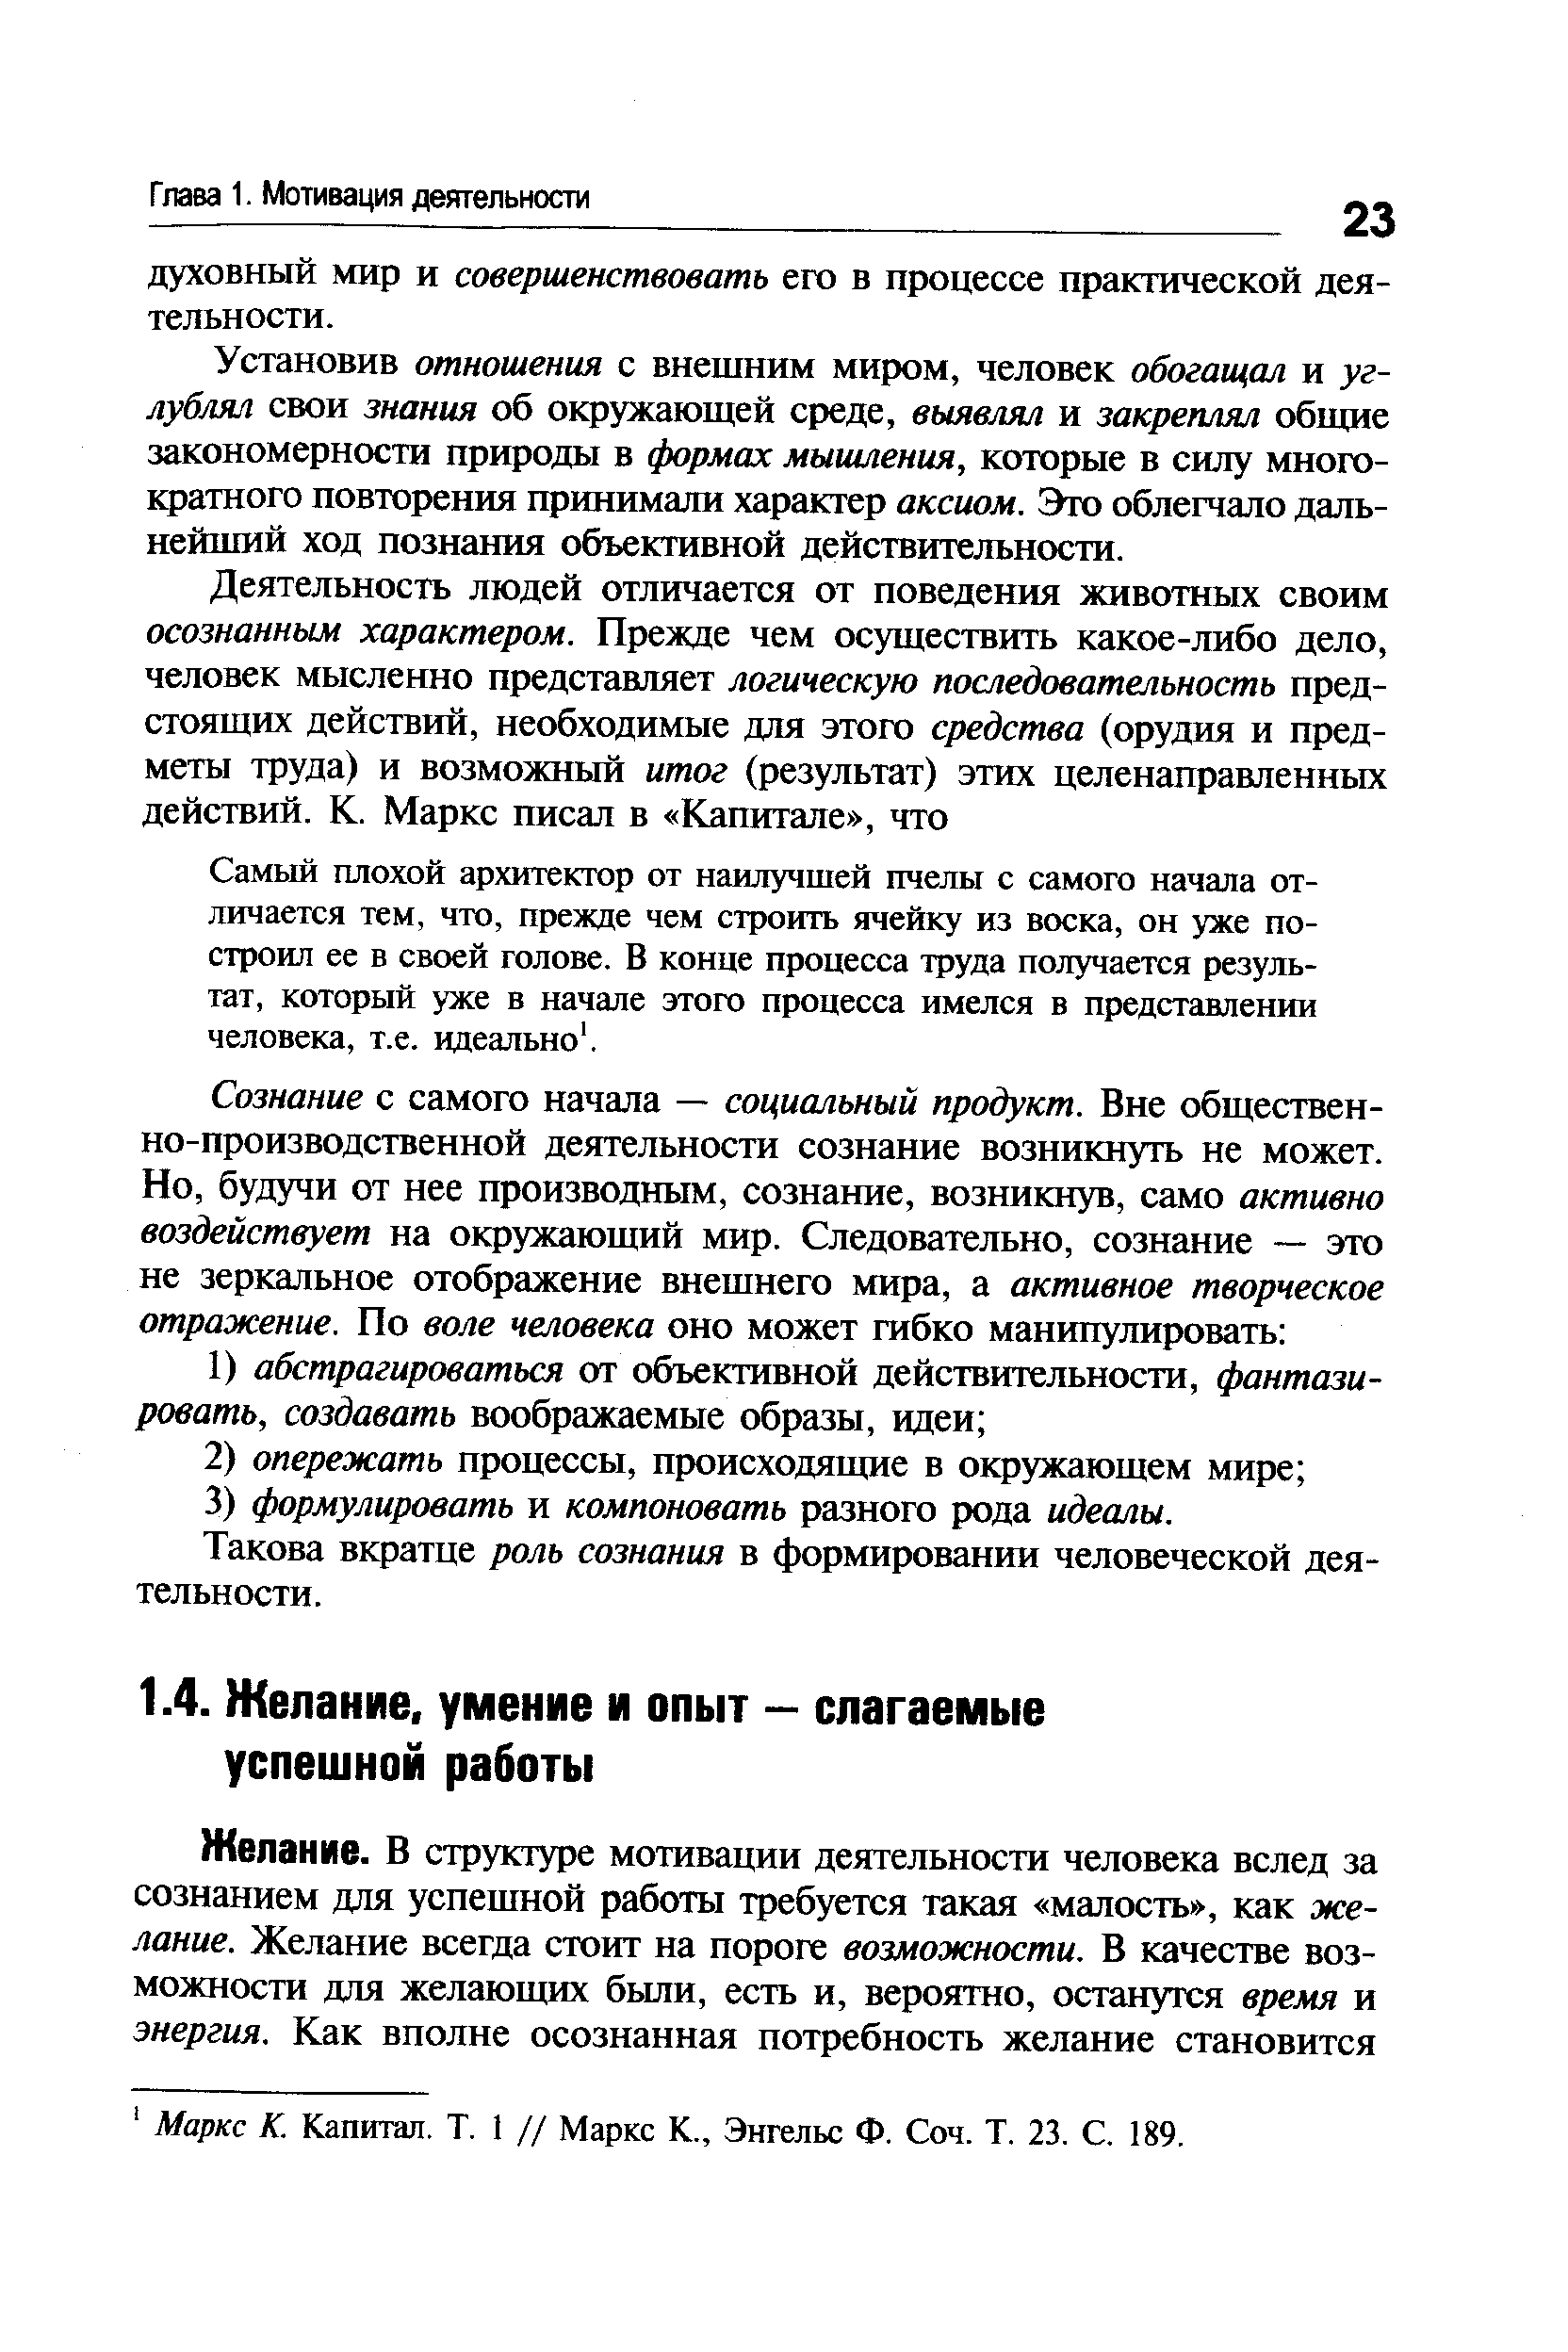 Маркс К. Капитал. Т. 1 // Маркс К., Энгельс Ф. Соч. Т. 23. С. 189.
